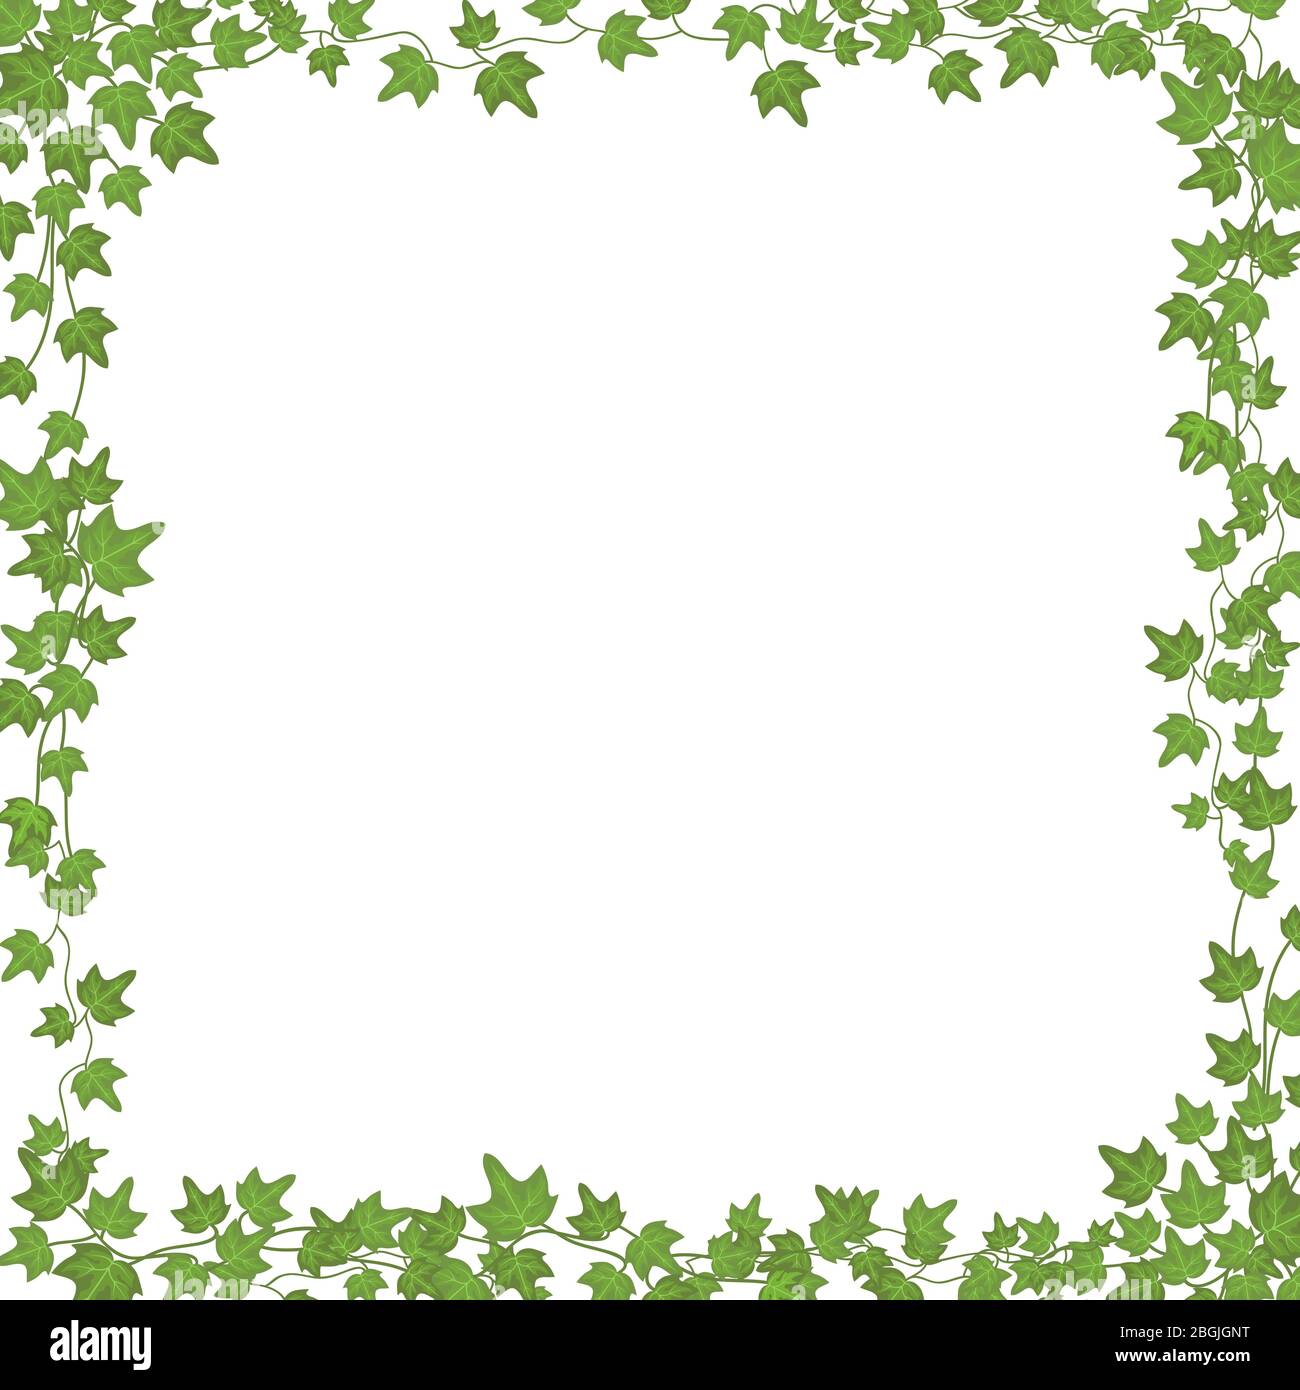 Vignes Ivy avec feuilles vertes. Cadre rectangulaire vectoriel floral isolé sur fond blanc. Illustration plante verte, branche de vigne tordeuse, cadre rectangulaire ivy avec espace de copie Illustration de Vecteur